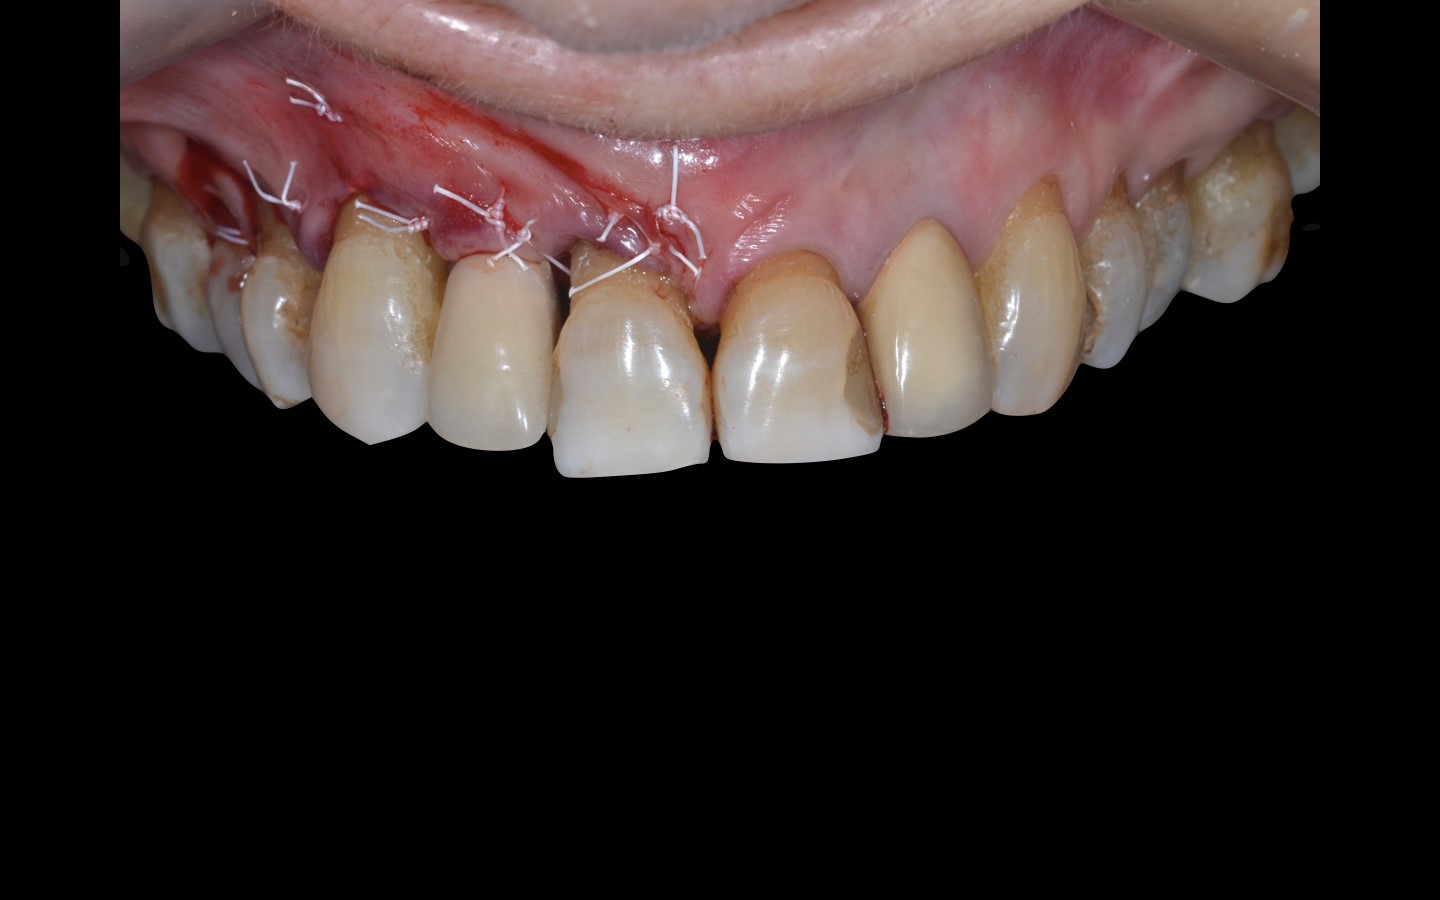 image16 - Reabilitação dento-alveolar com implante Arcsys, enxerto conjuntivo e substituto ósseo Nanosynt